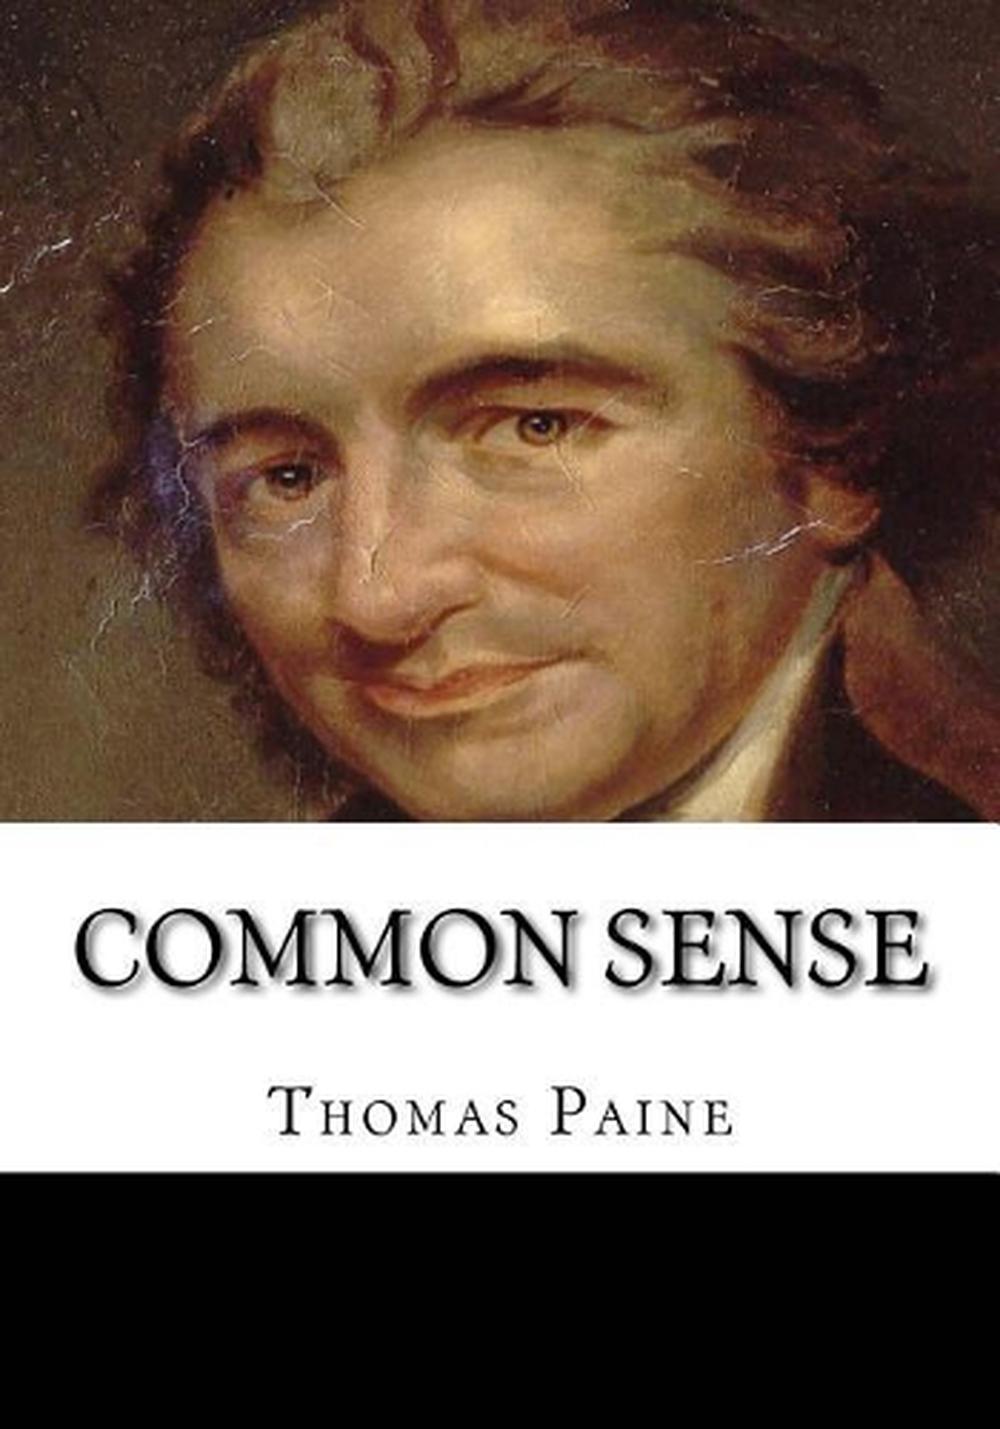 thomas paine wrote common sense to